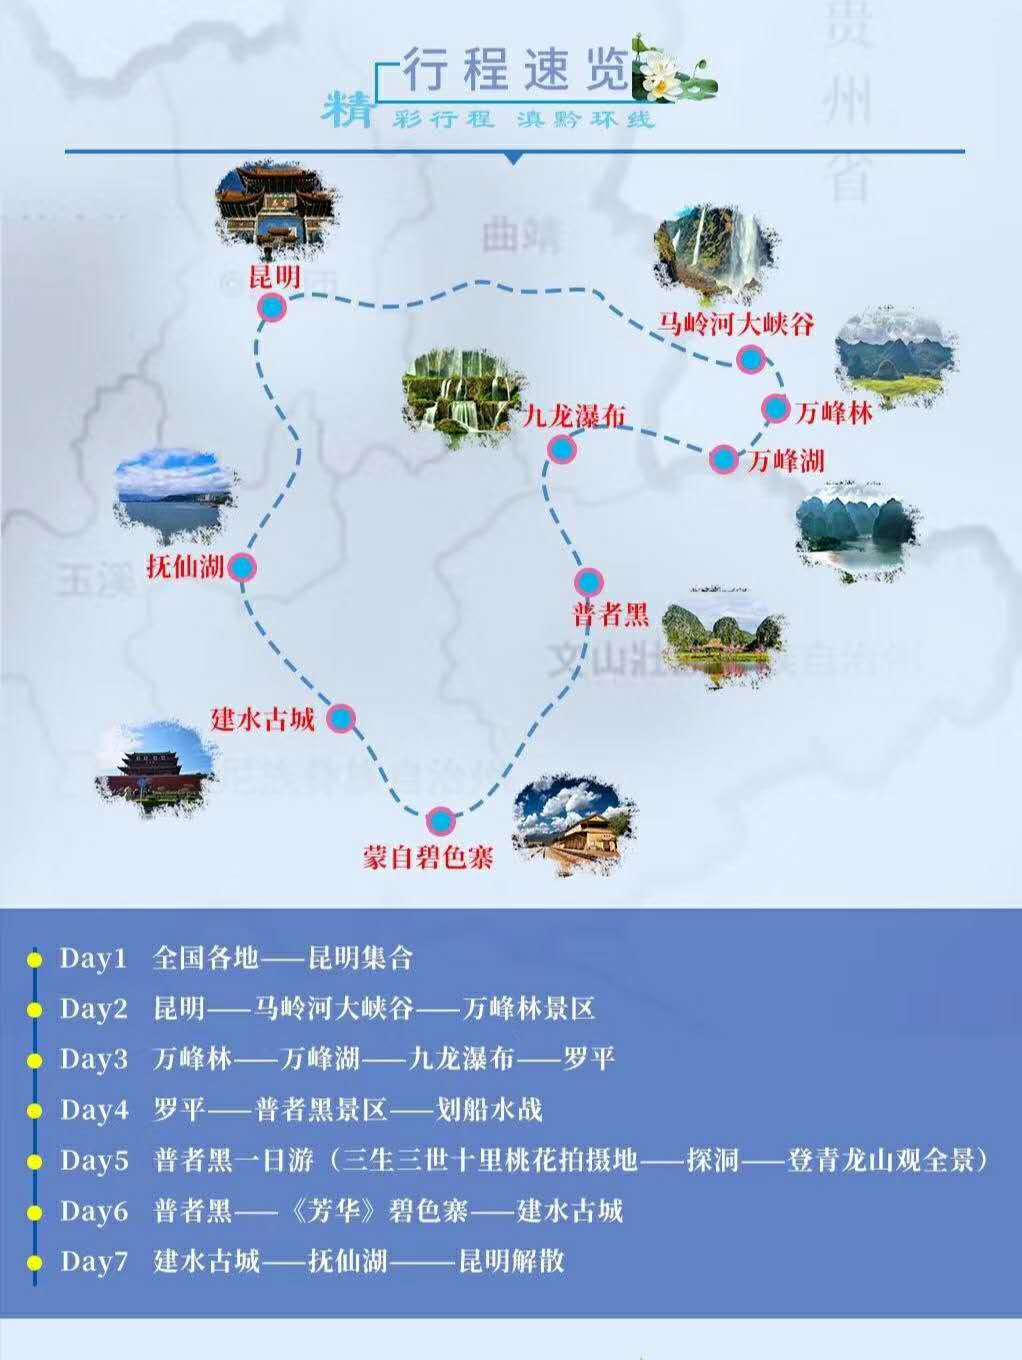 地图资料 47,滇黔环线:云南与贵州的自己线路,可自驾抚仙湖,普者黑,万